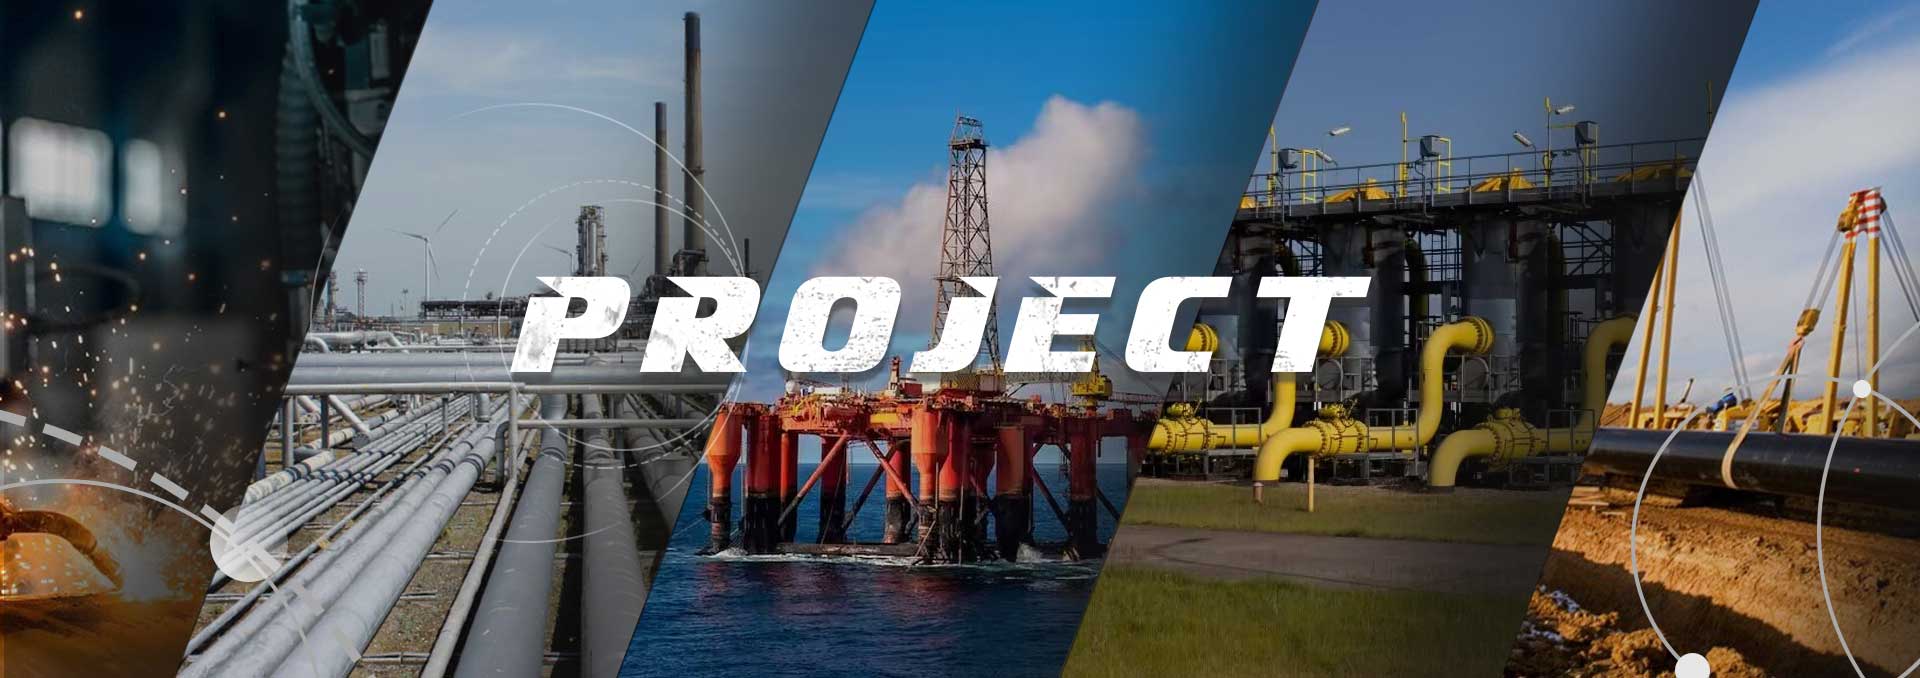 Proyectos de tubería de acero, proyecto de tubería de acero en alta mar, Union Steel Industry Co., Ltd